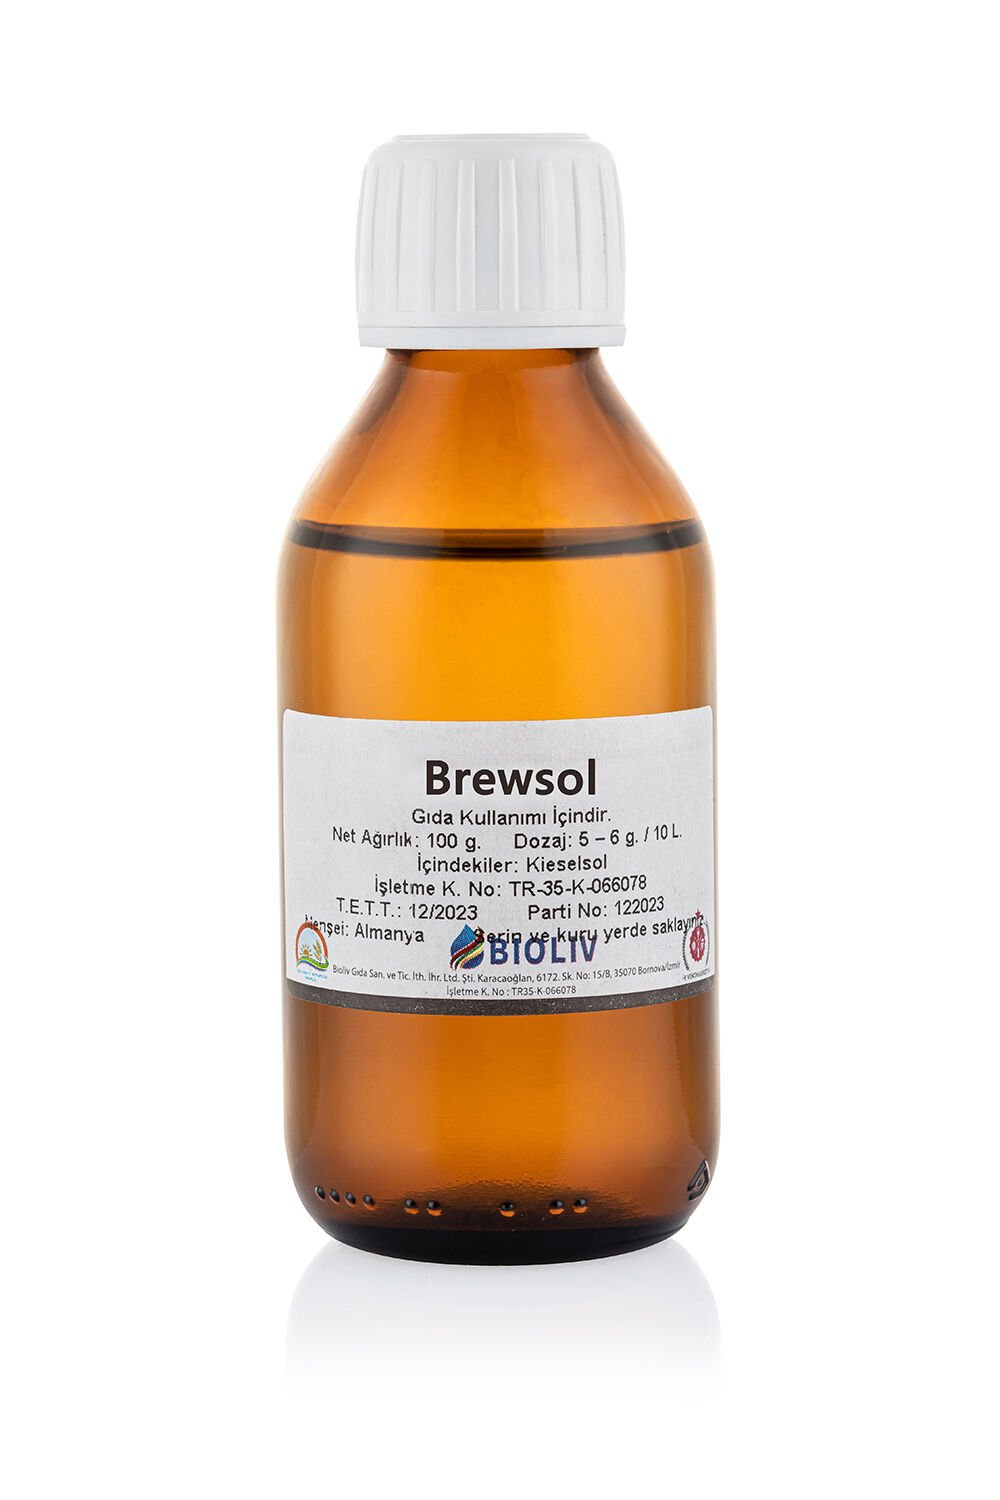 Brewsol - 100 g.